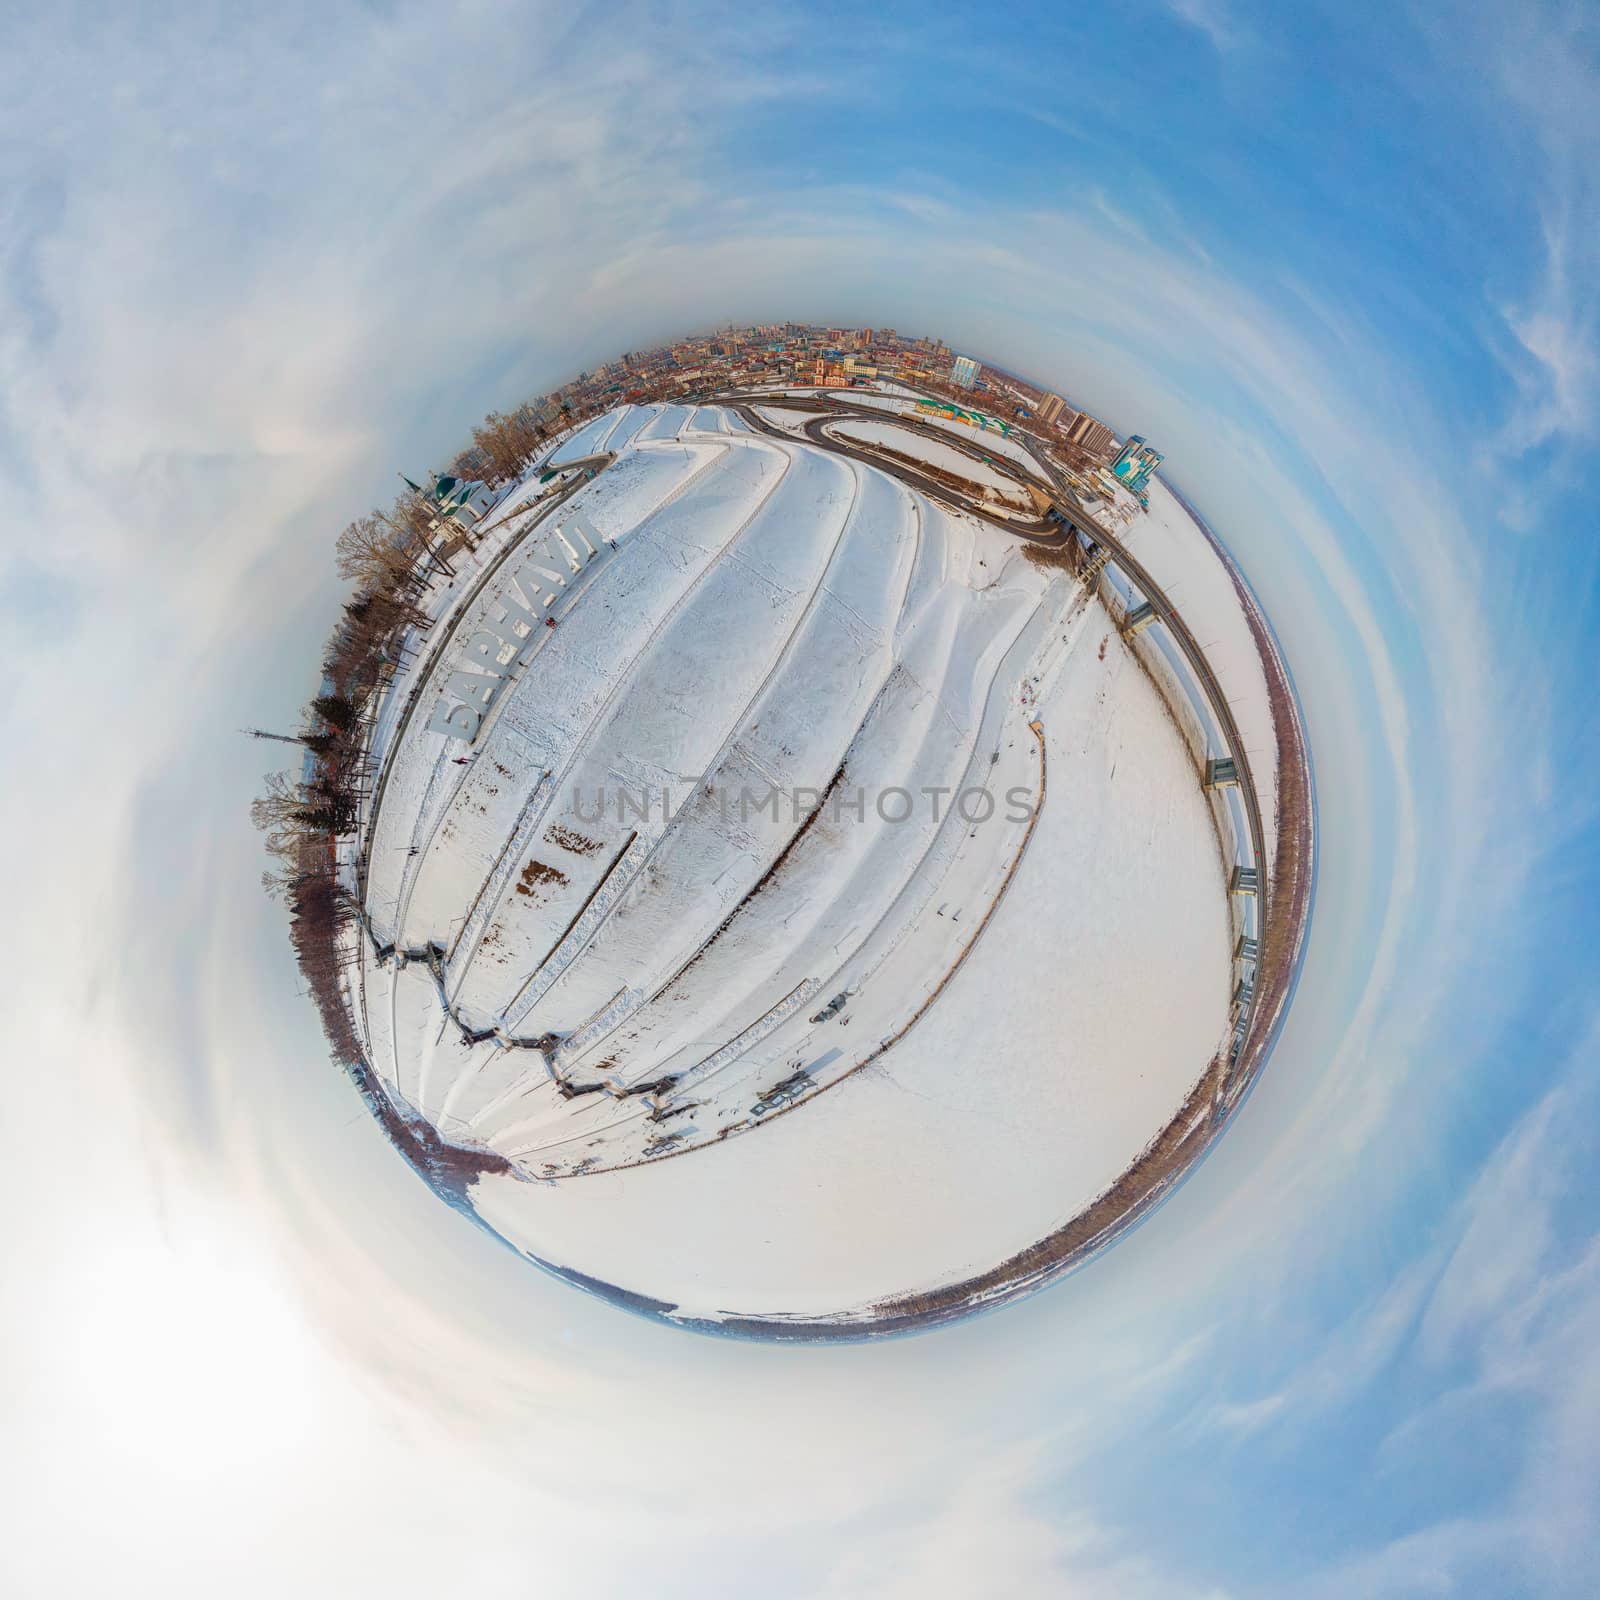 360 spherical panorama of Barnaul by rusak